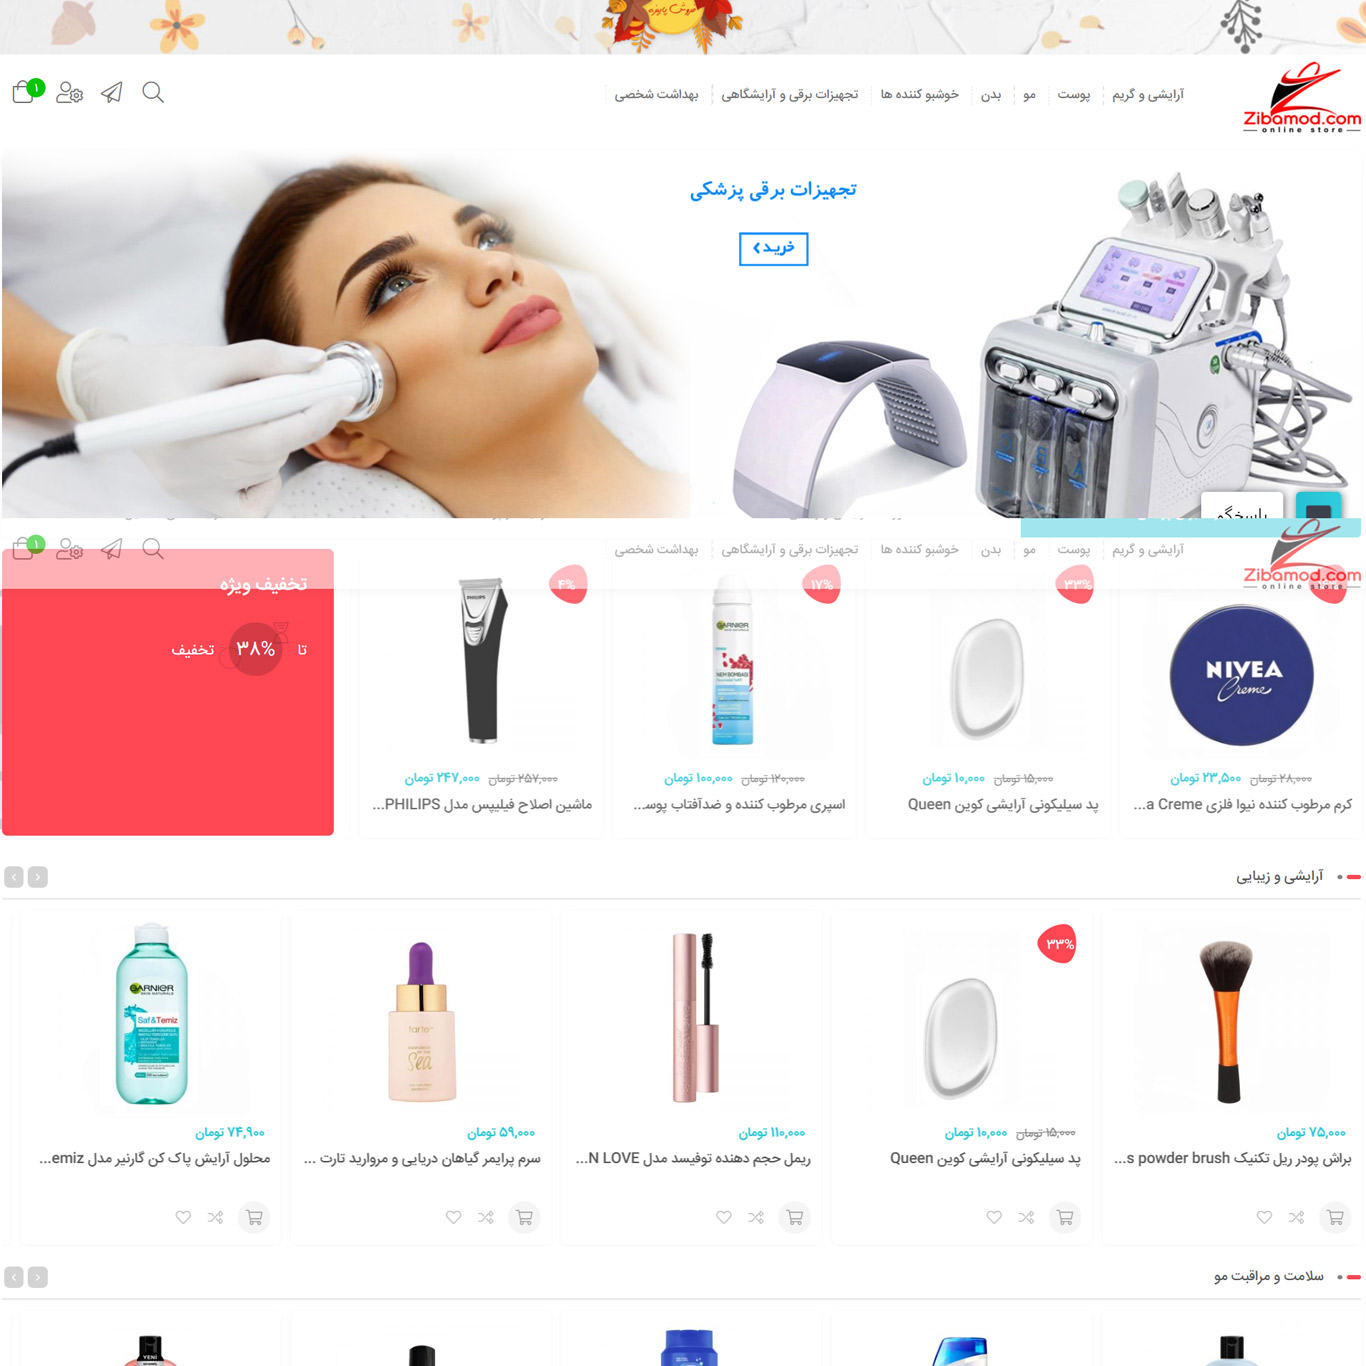 طراحی سایت فروشگاه زیبا مد توسط شرکت فناوری اطلاعات ژیوار